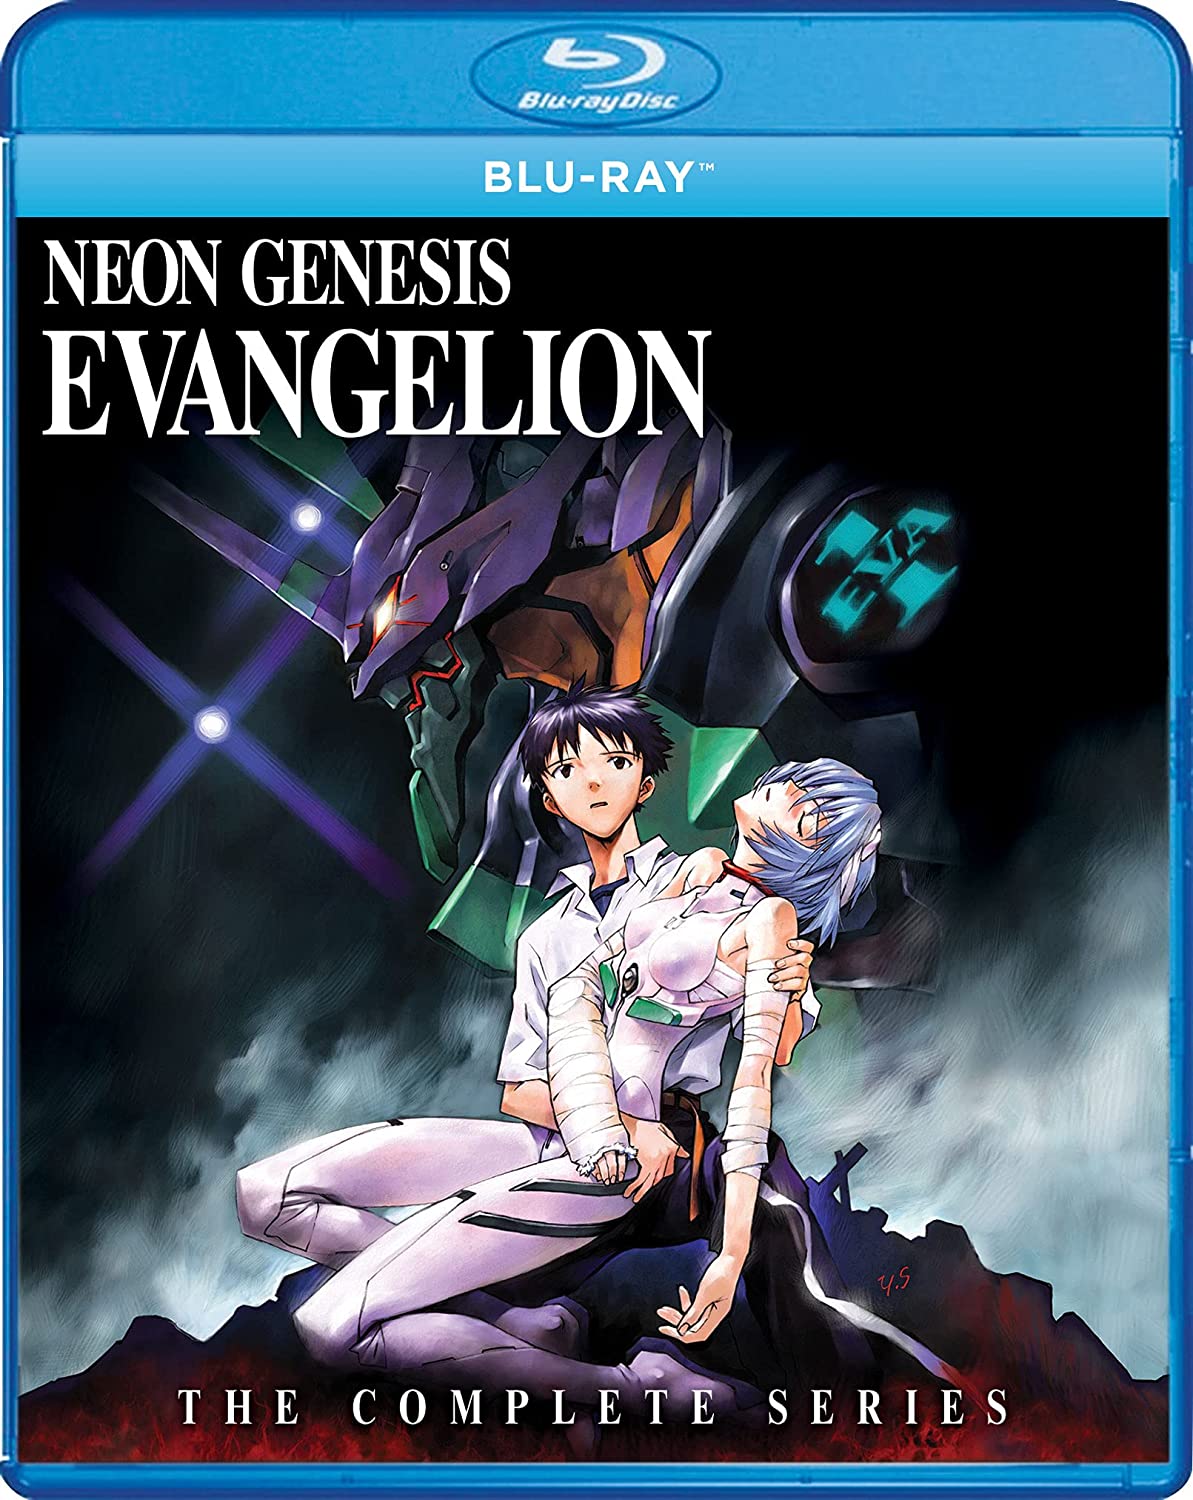 Neon Genesis Evangelion- The Complete Series Blu-ray